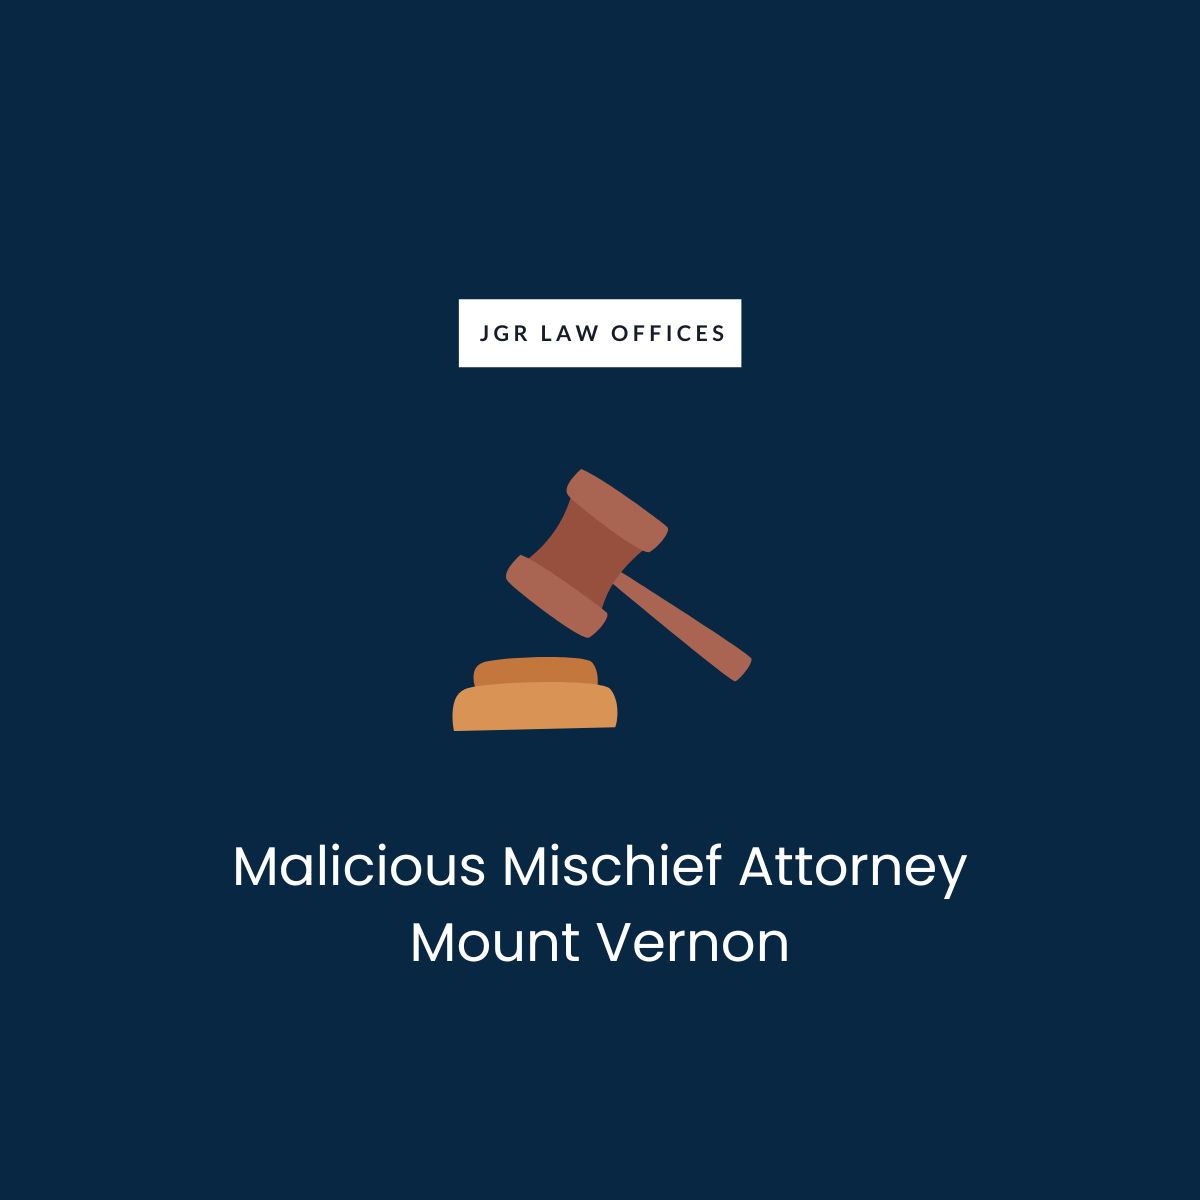 Malicious Mischief Attorney Mount Vernon